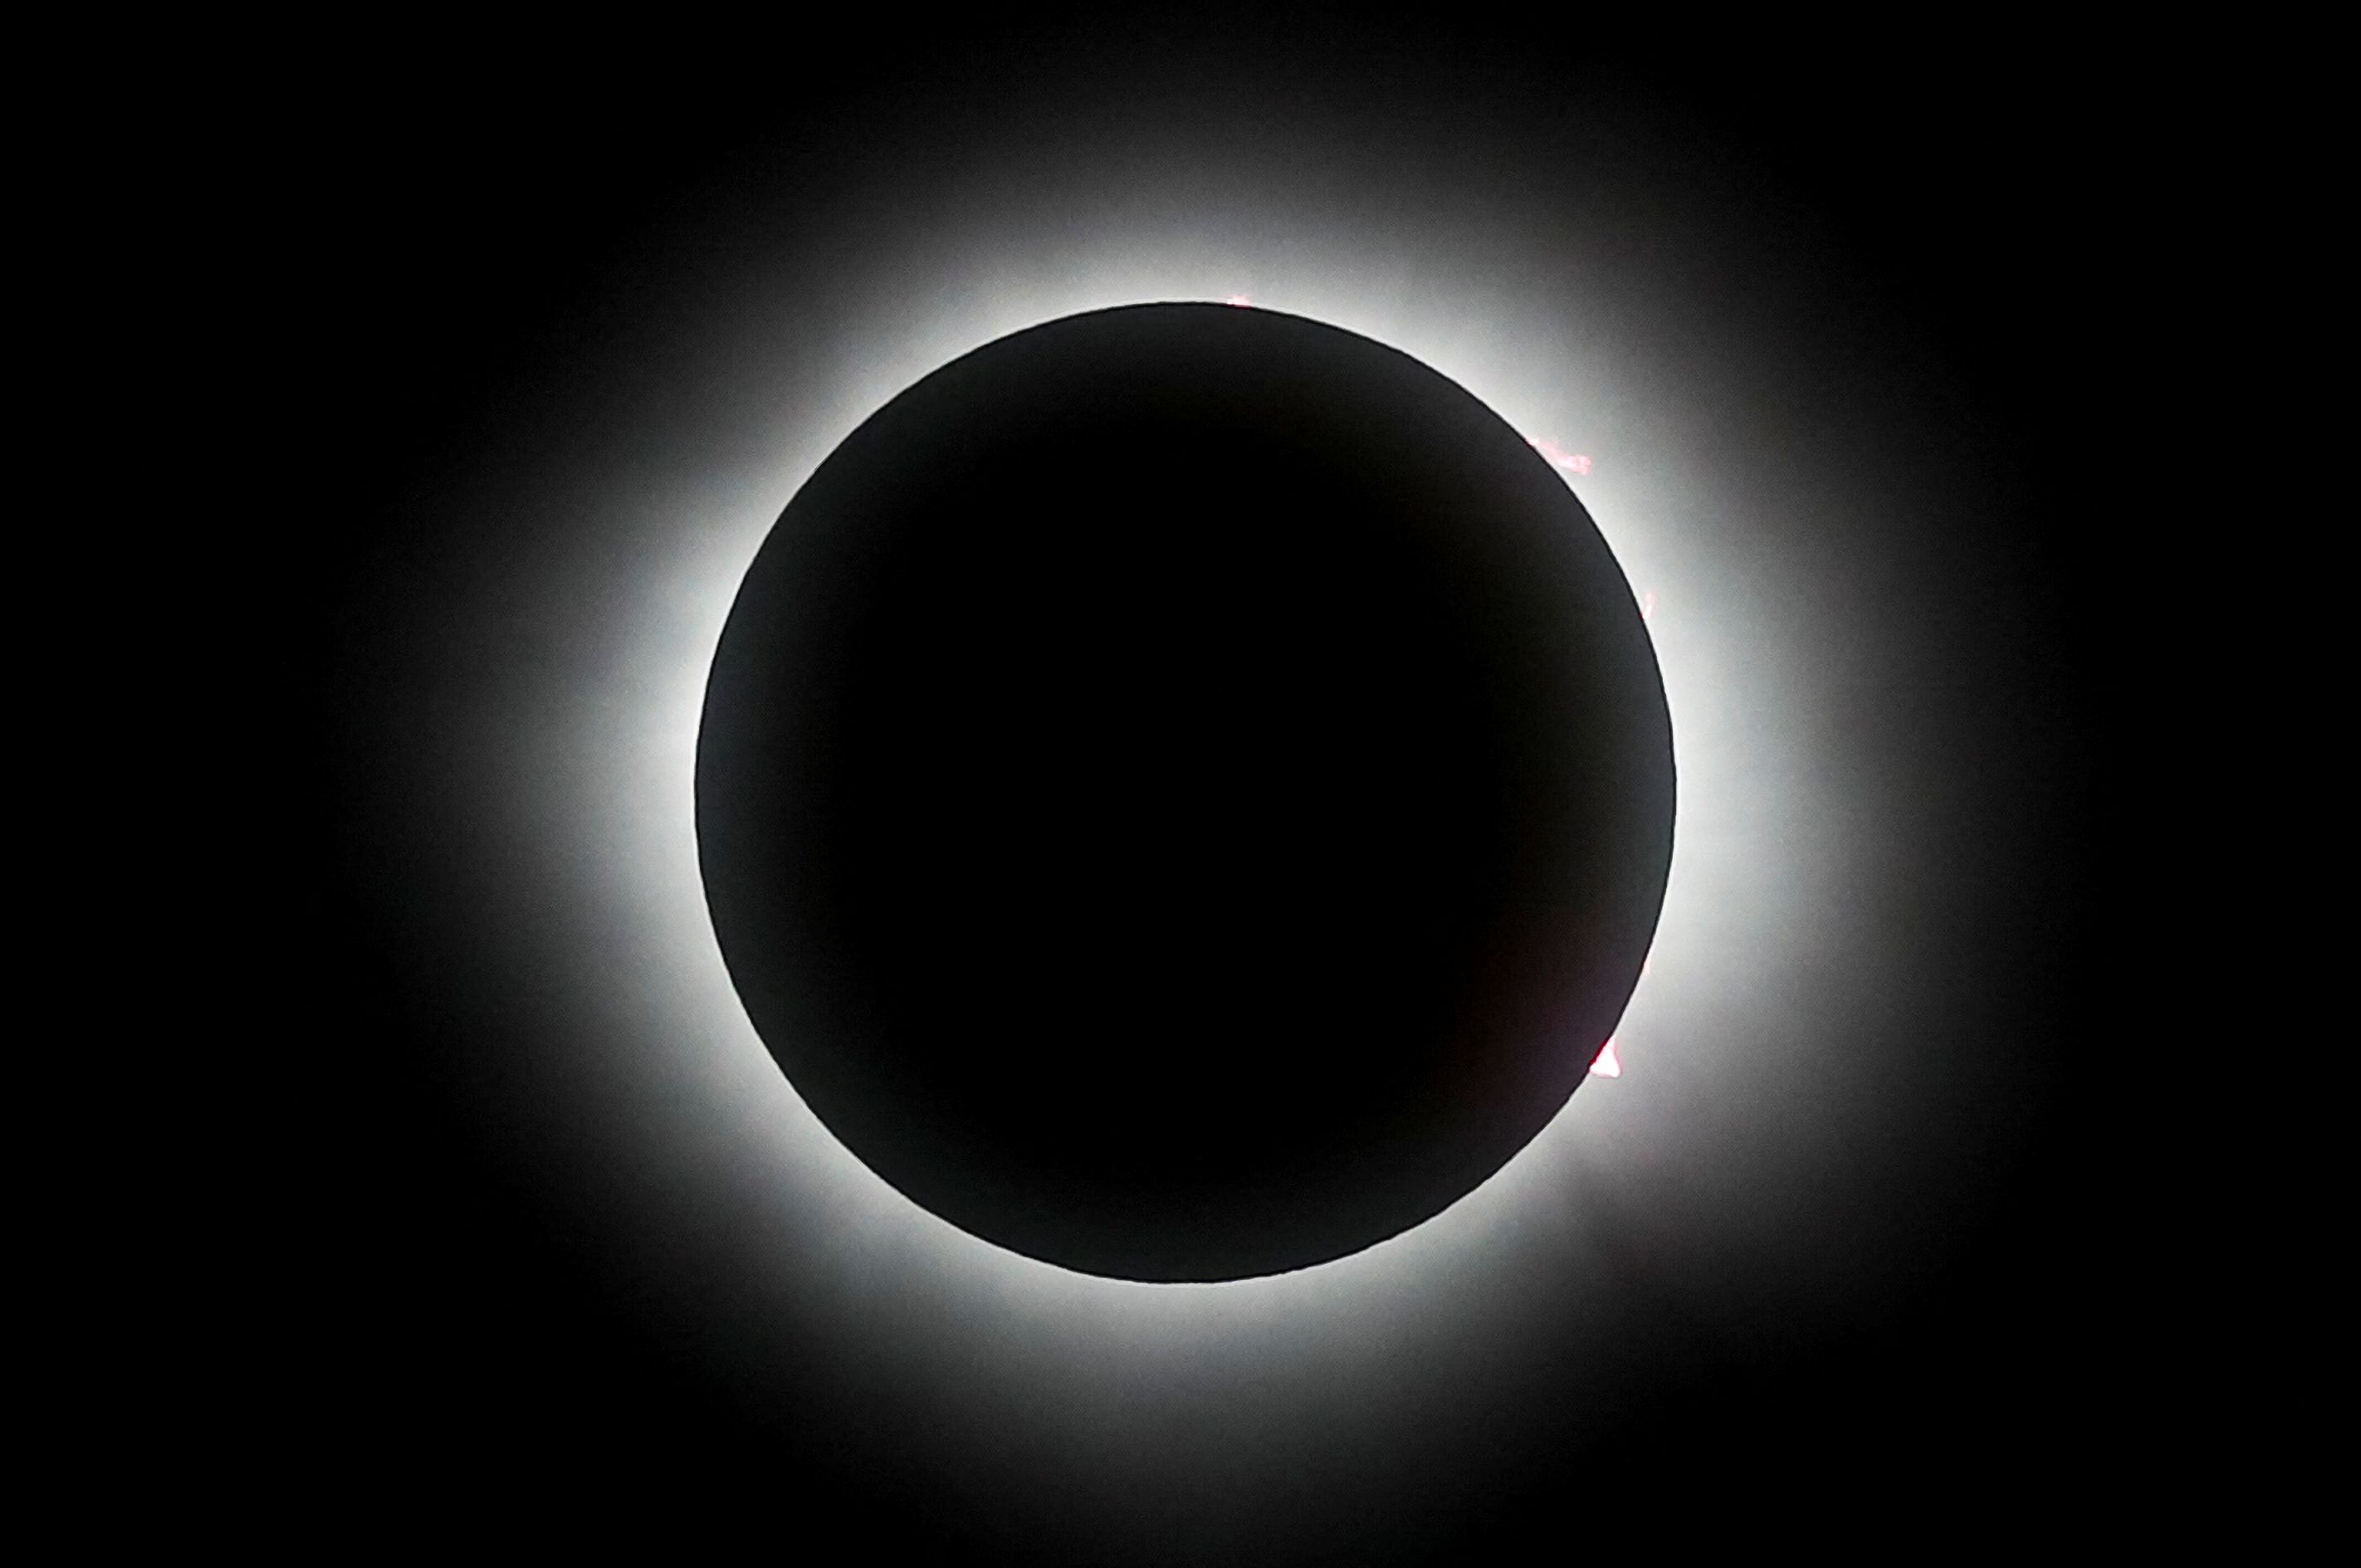 La trayectoria del eclipse permitió a millones de personas presenciar el espectáculo astronómico en México, Estados Unidos y Canadá